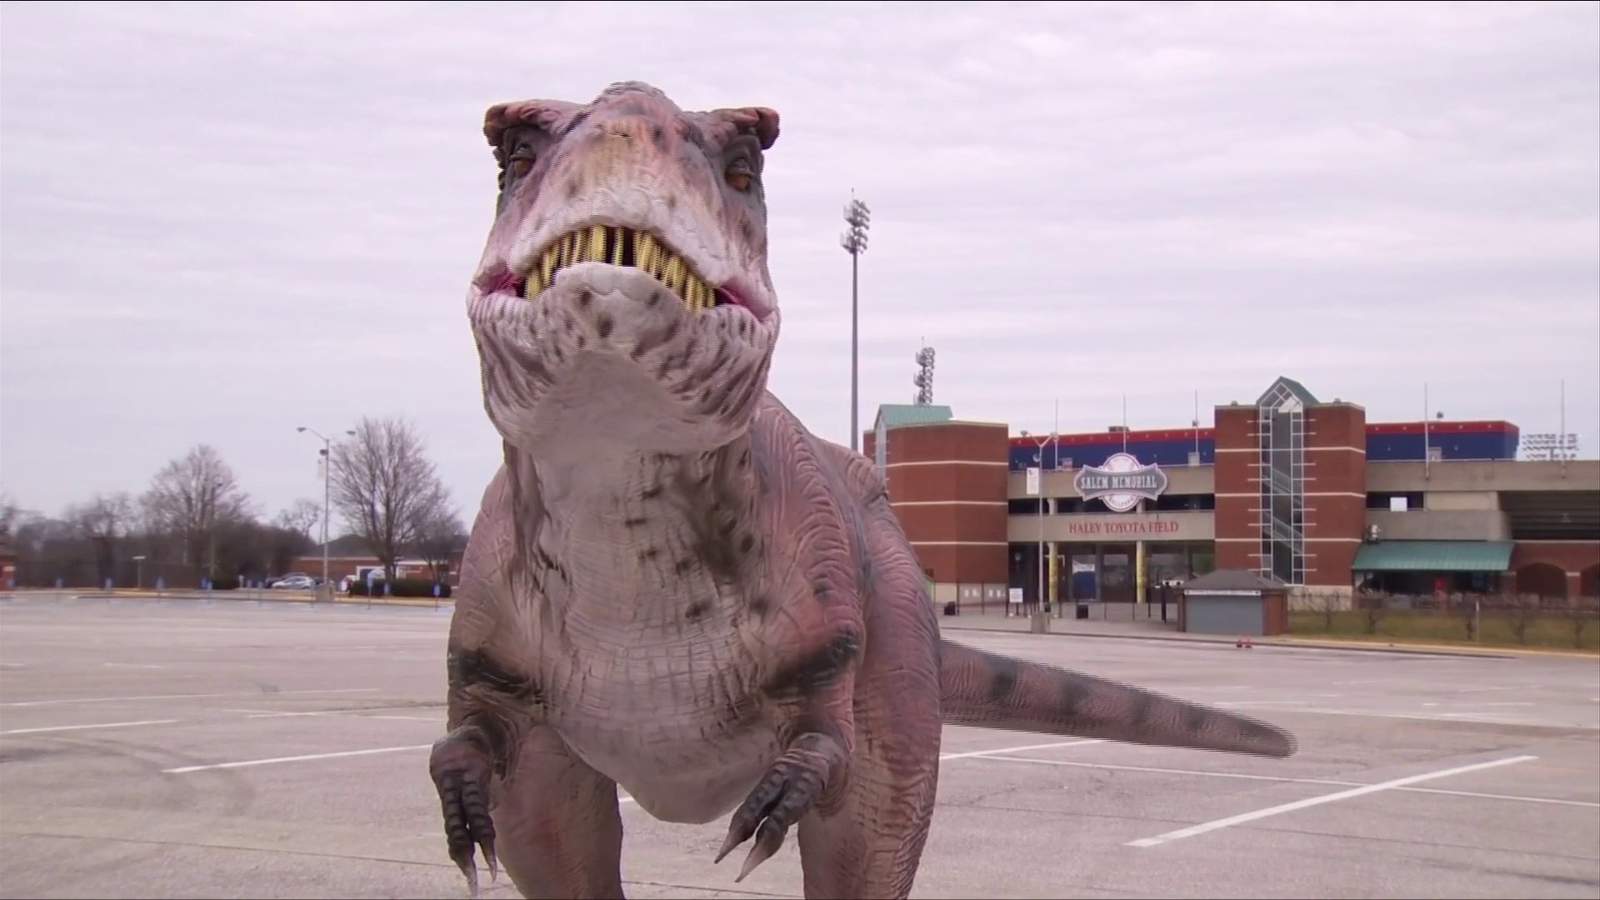 Jurassic Wonder Dinosaur Drive-Thru comes alive in Salem this weekend